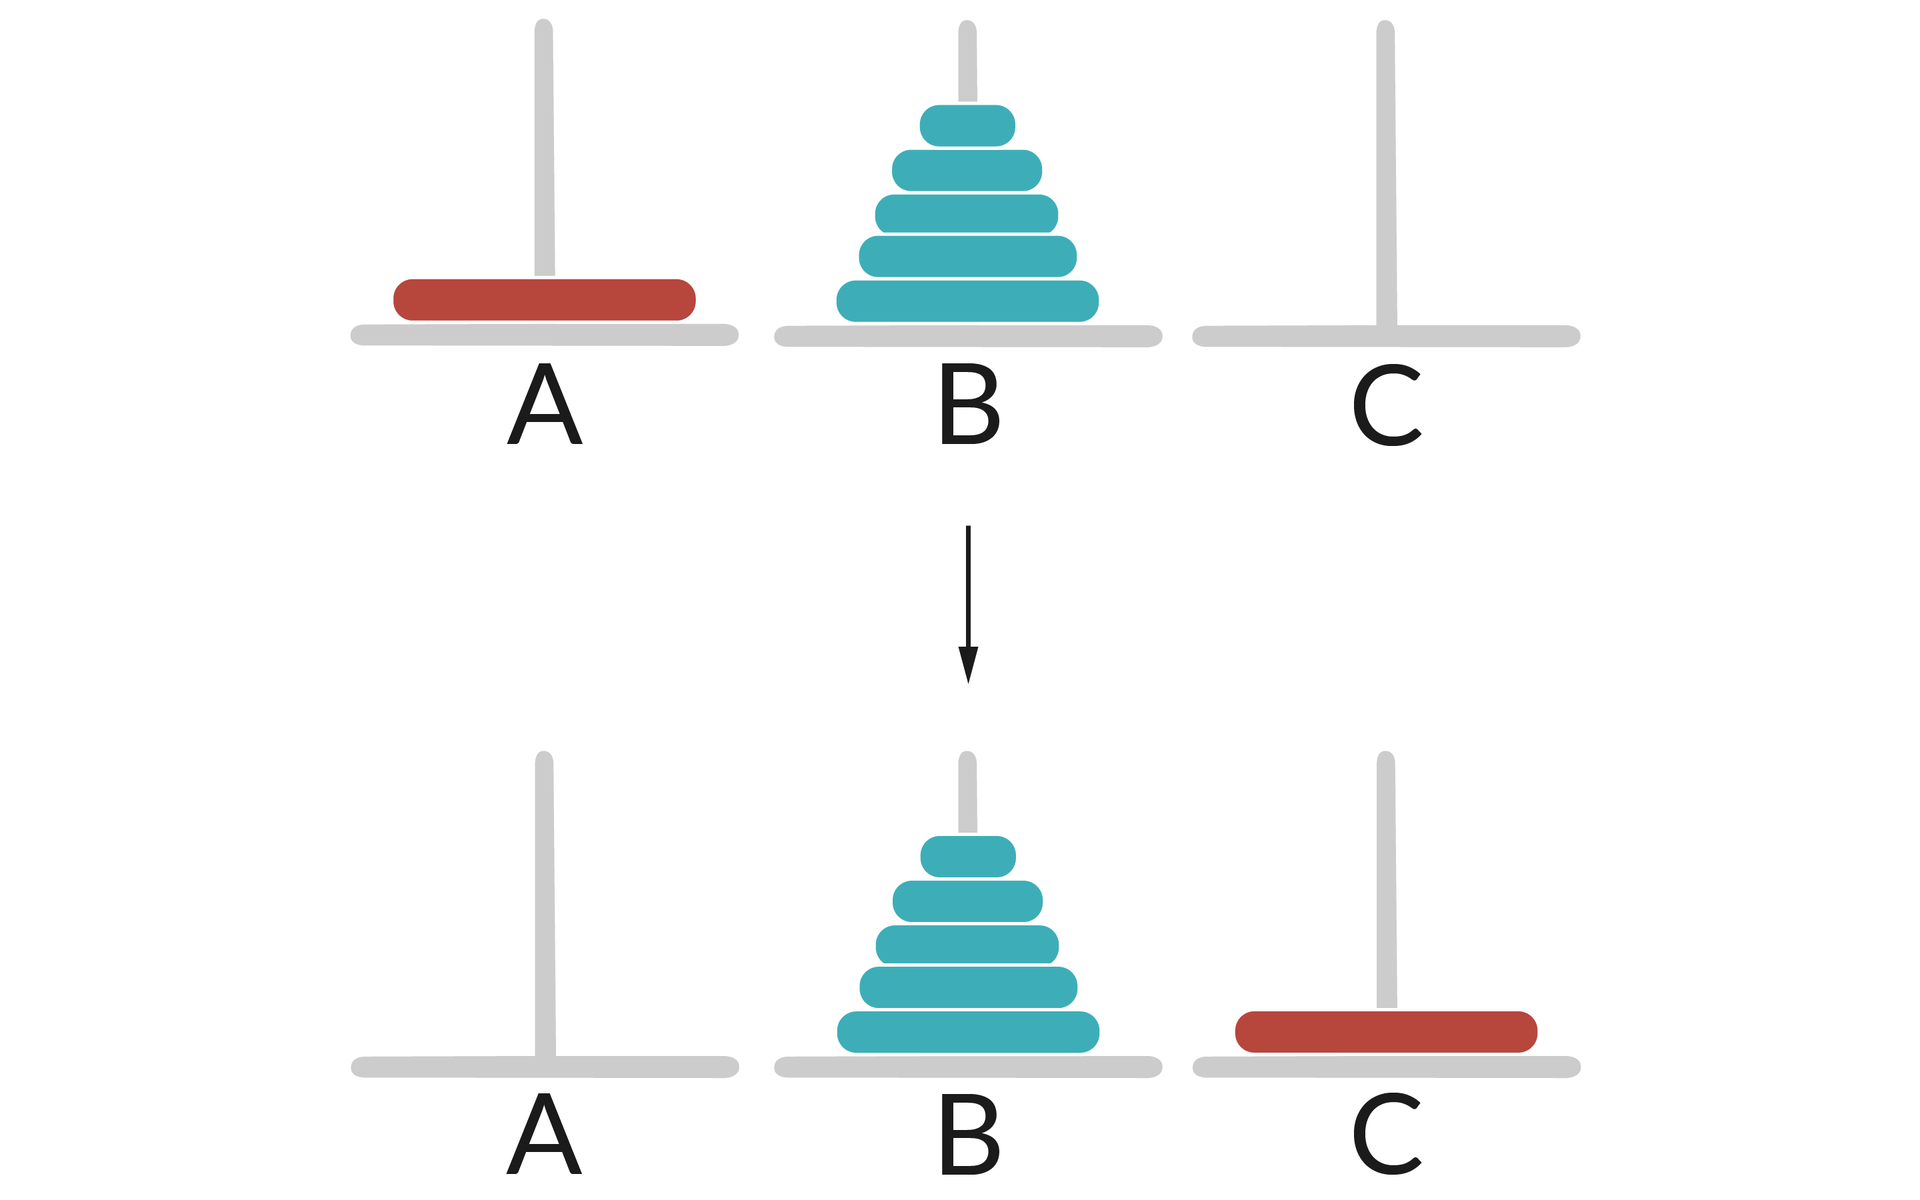  Ilustracja przedstawia dwa rzędy słupków: A, B, C.  Na słupku A umieszczony jest pojedynczy duży krążek koloru czerwonego. Na słupku B umieszczonych jest 5 krążków w kolejności od największego do najmniejszego koloru niebieskiego.  W drugim rzędzie słupków na słupku B umieszczonych jest 5 krążków w kolejności od największego do najmniejszego koloru niebieskiego.  Na słupku C umieszczony jest pojedynczy duży krążek koloru czerwonego. 